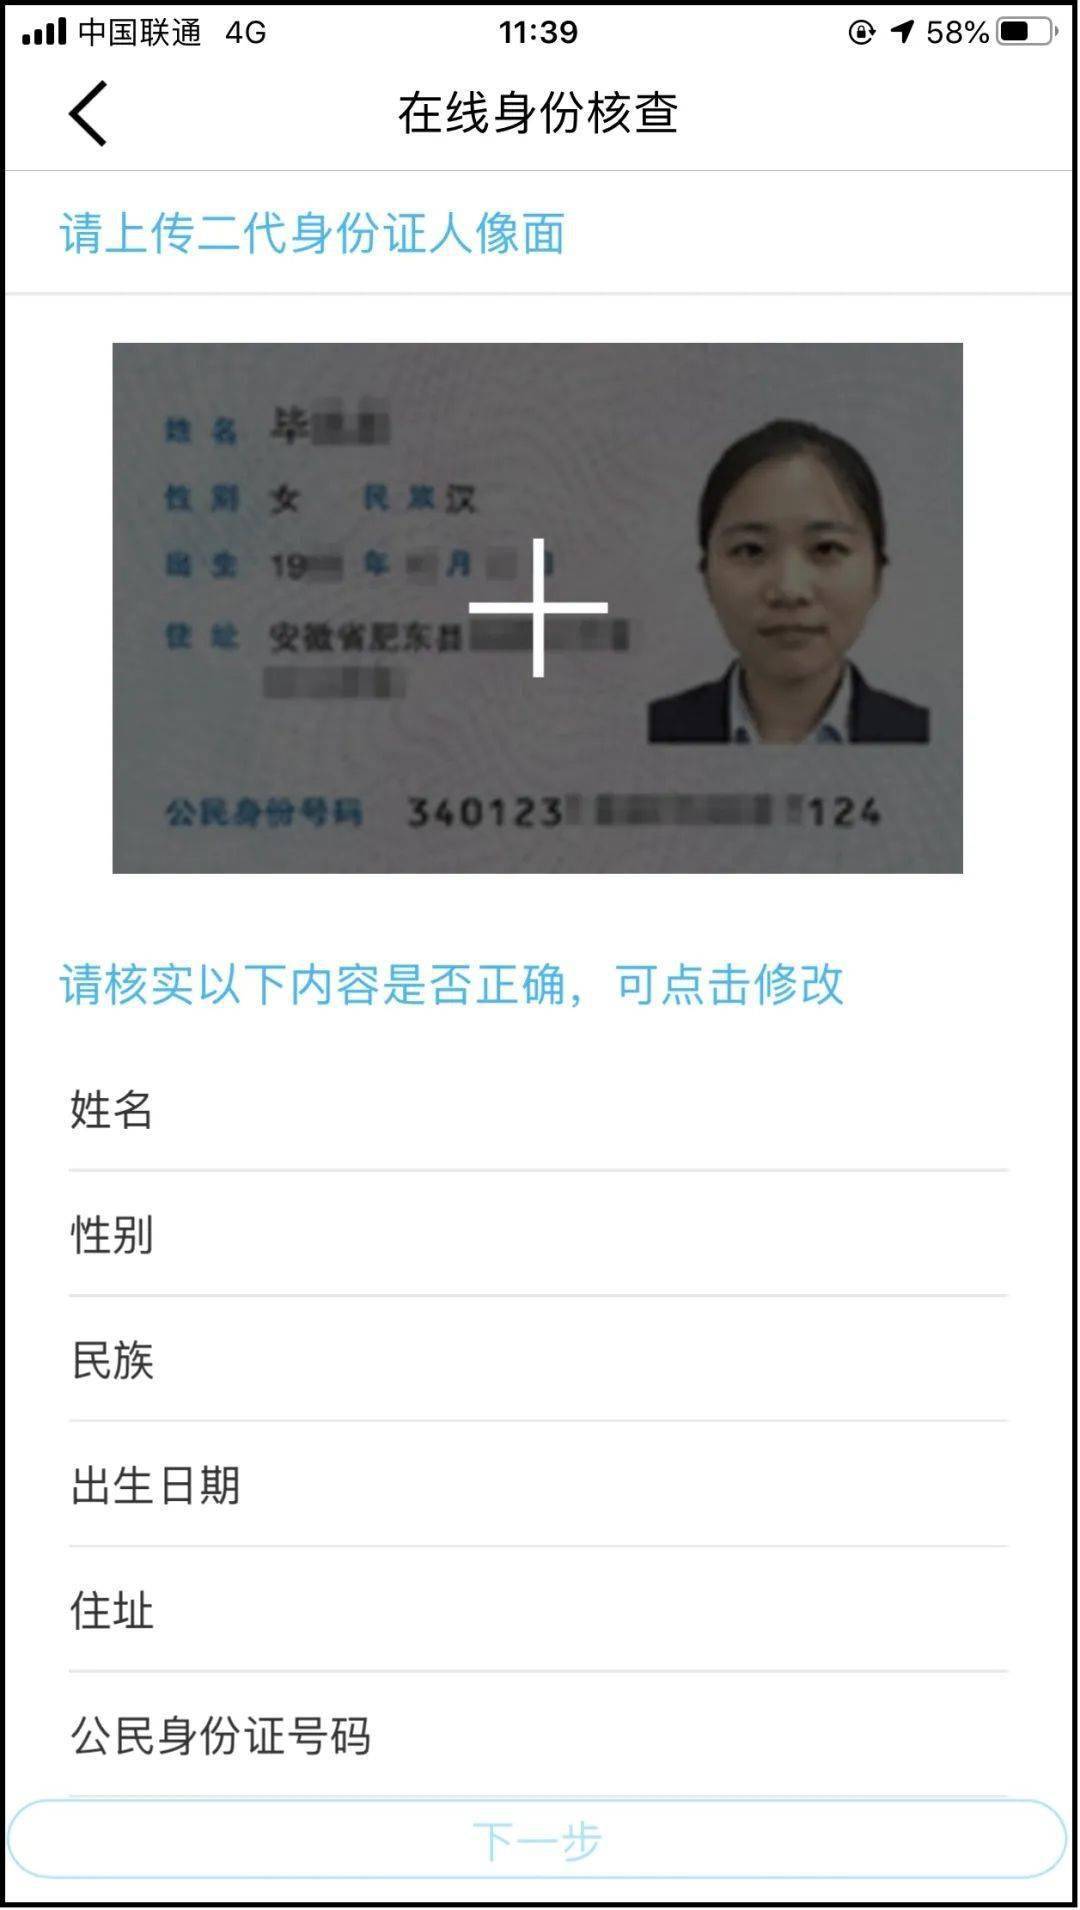 实名认证需要人脸识别怎么办_imtoken需要实名认证吗_实名认证需要身份证照片吗